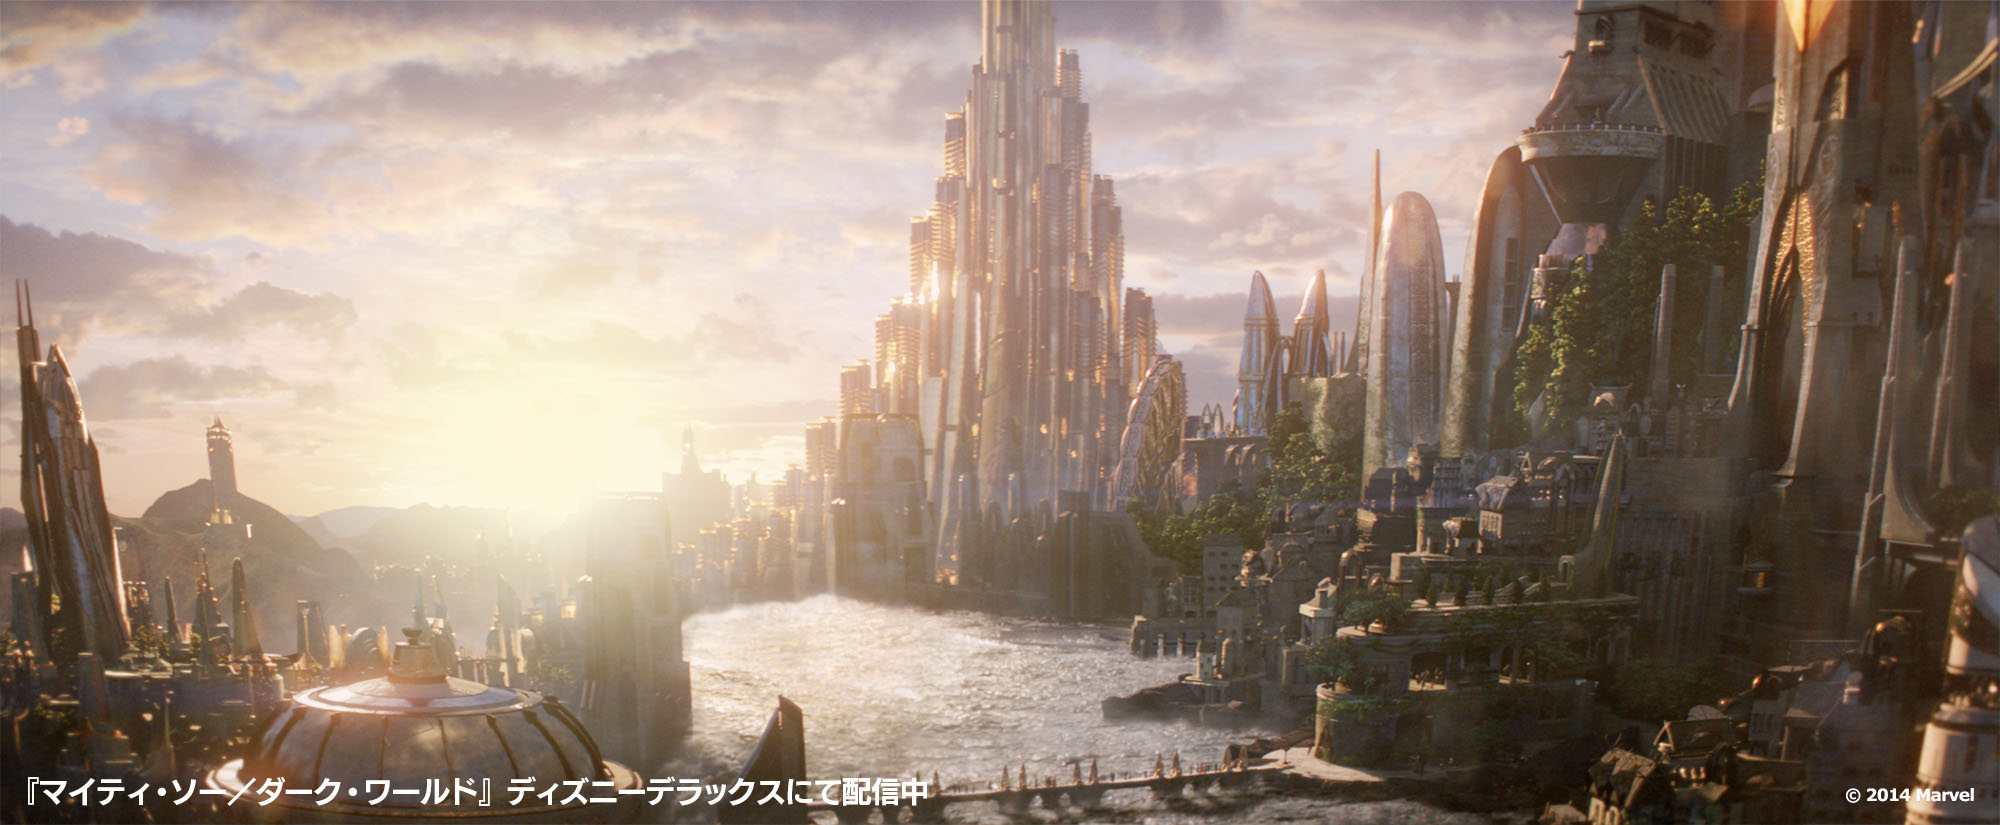 Marvel on Twitter: "#ソー たちアスガルドの神々が暮らす場所は、まるで大きなお城のよう❓ ※入るには、門番のチェックあり⚠️  #マーベル #城の日 https://t.co/CHI6phx8iF" / Twitter